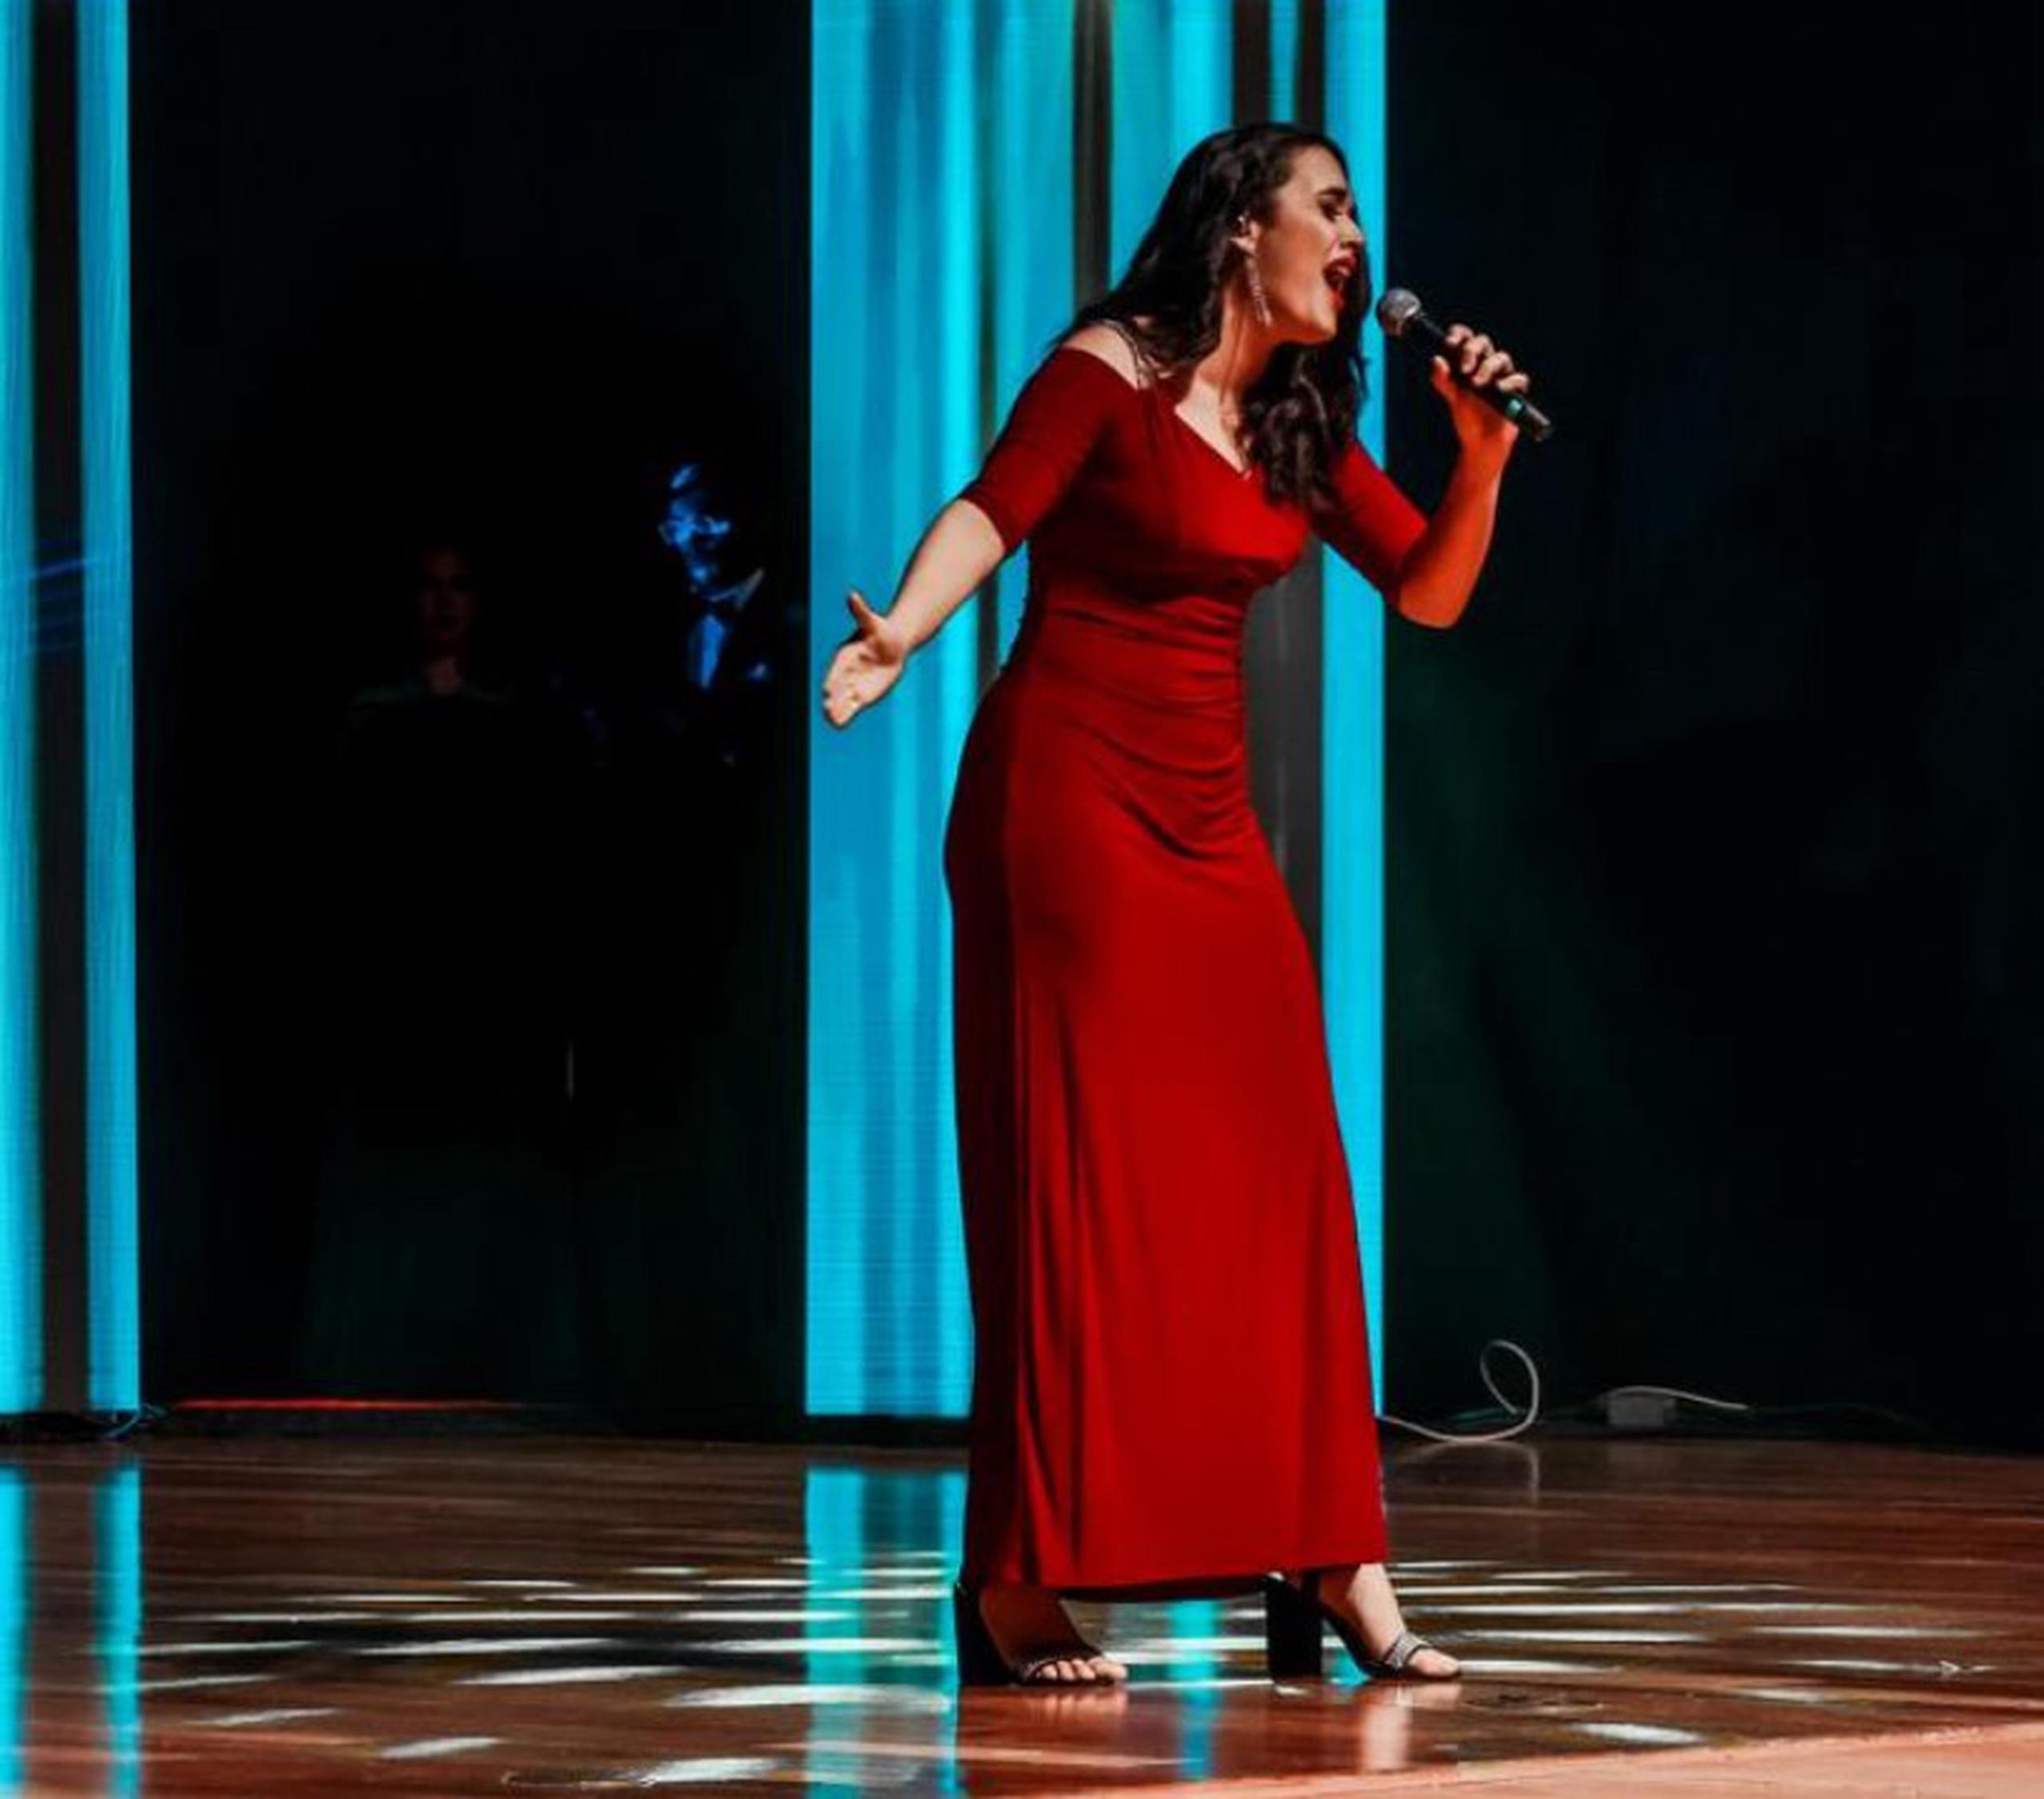 Ganador de reality show de Televisa sorprende al aparecer en Exatlón México